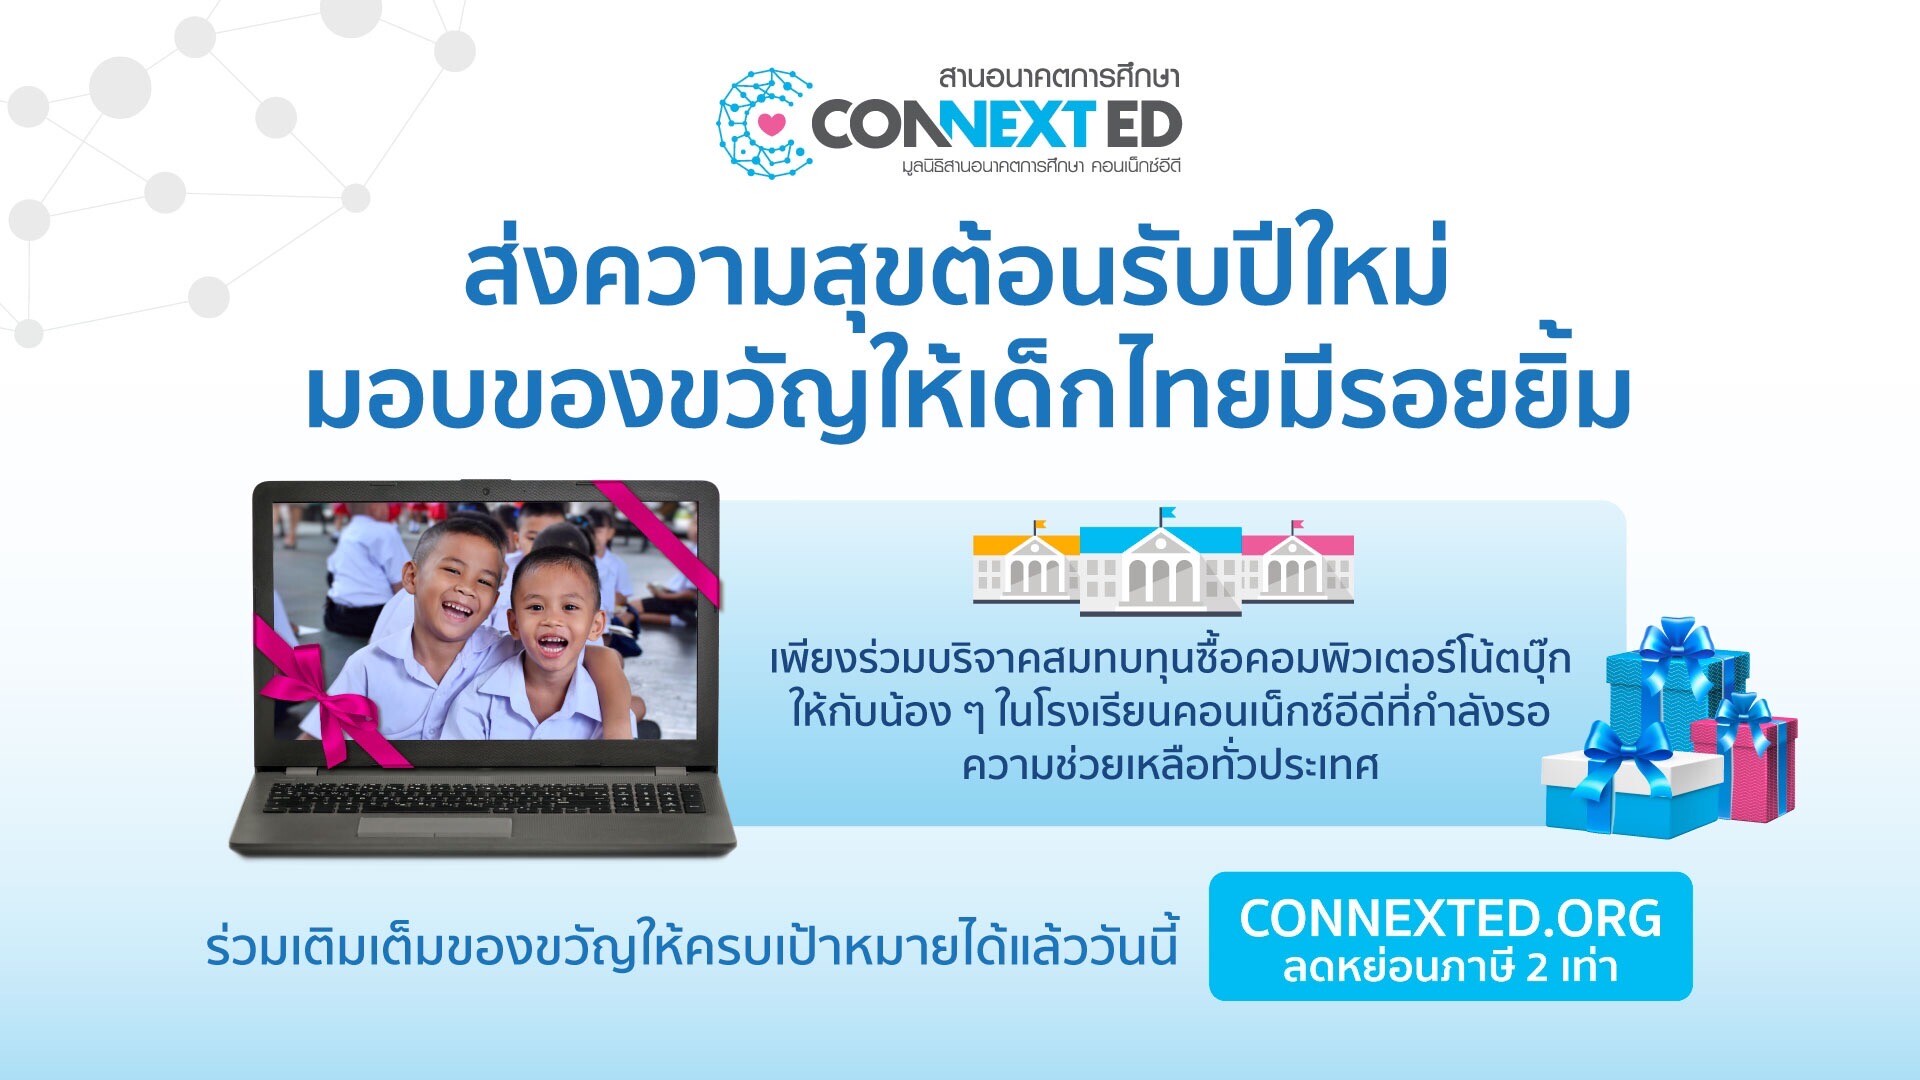 ส่งความสุขปีใหม่ 2022 ให้เด็กไทยมีรอยยิ้ม กันดีมั้ย?…มูลนิธิสานอนาคตการศึกษา คอนเน็กซ์อีดี ชวนร่วมบริจาคเงินสมทบทุน มอบคอมพิวเตอร์โน้ตบุ๊กเพื่อการศึกษา เพื่อเป็นของขวัญปีใหม่แก่น้องๆ ในร.ร.ห่างไกลทั่วประเทศ